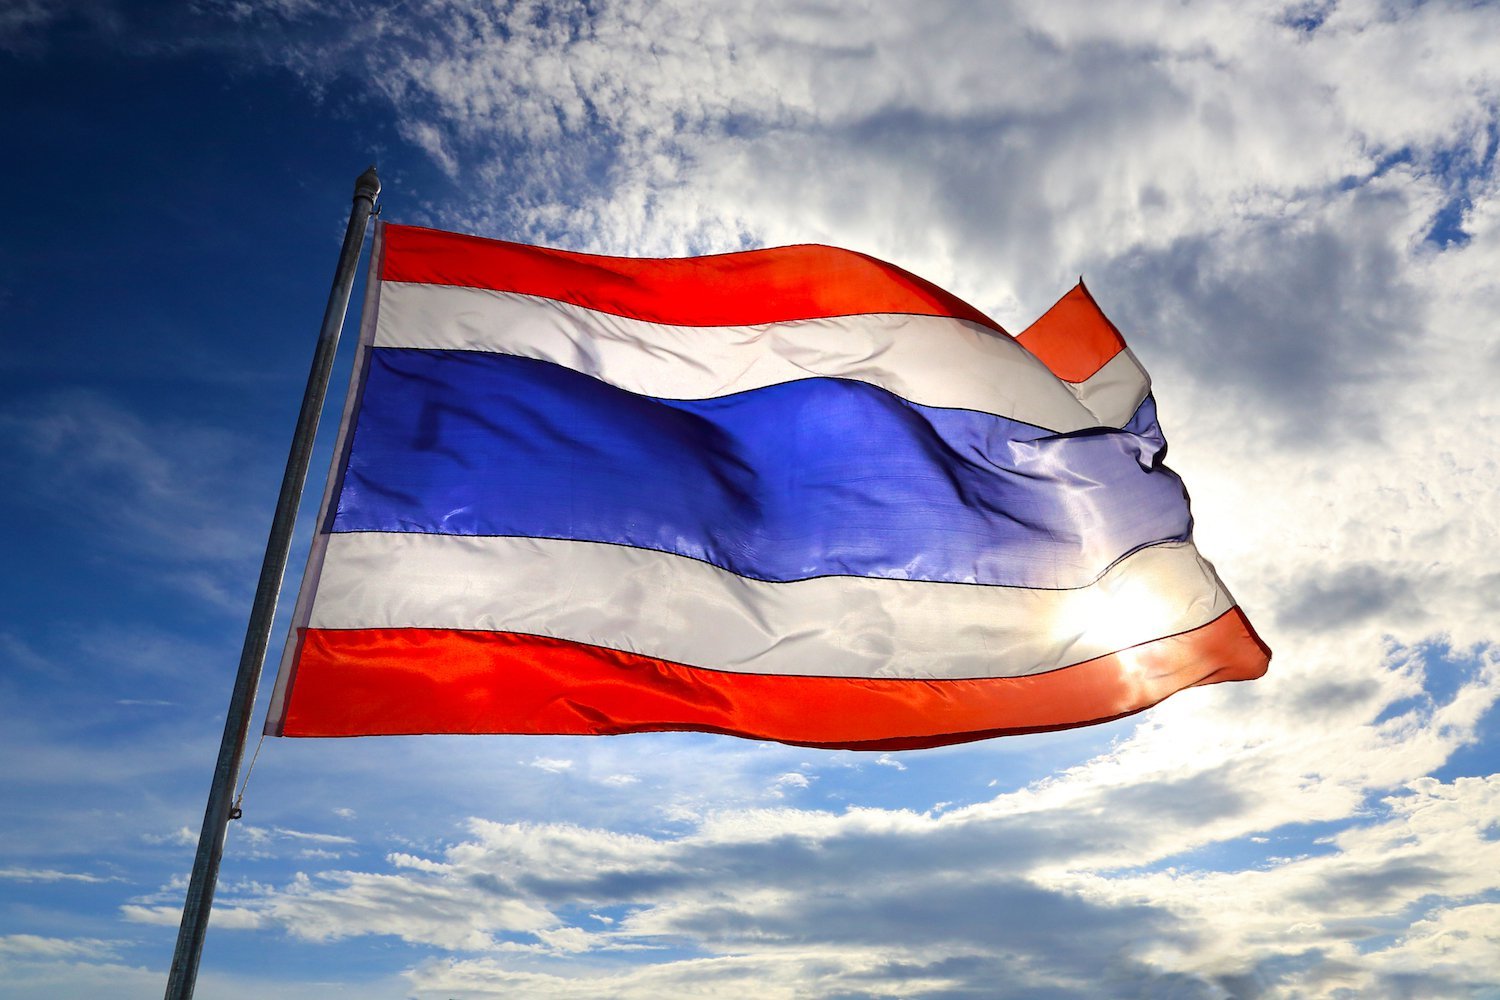 Ủy ban Giao dịch và Chứng khoán Thái Lan cảnh báo về các vụ scam ở nước ngoài